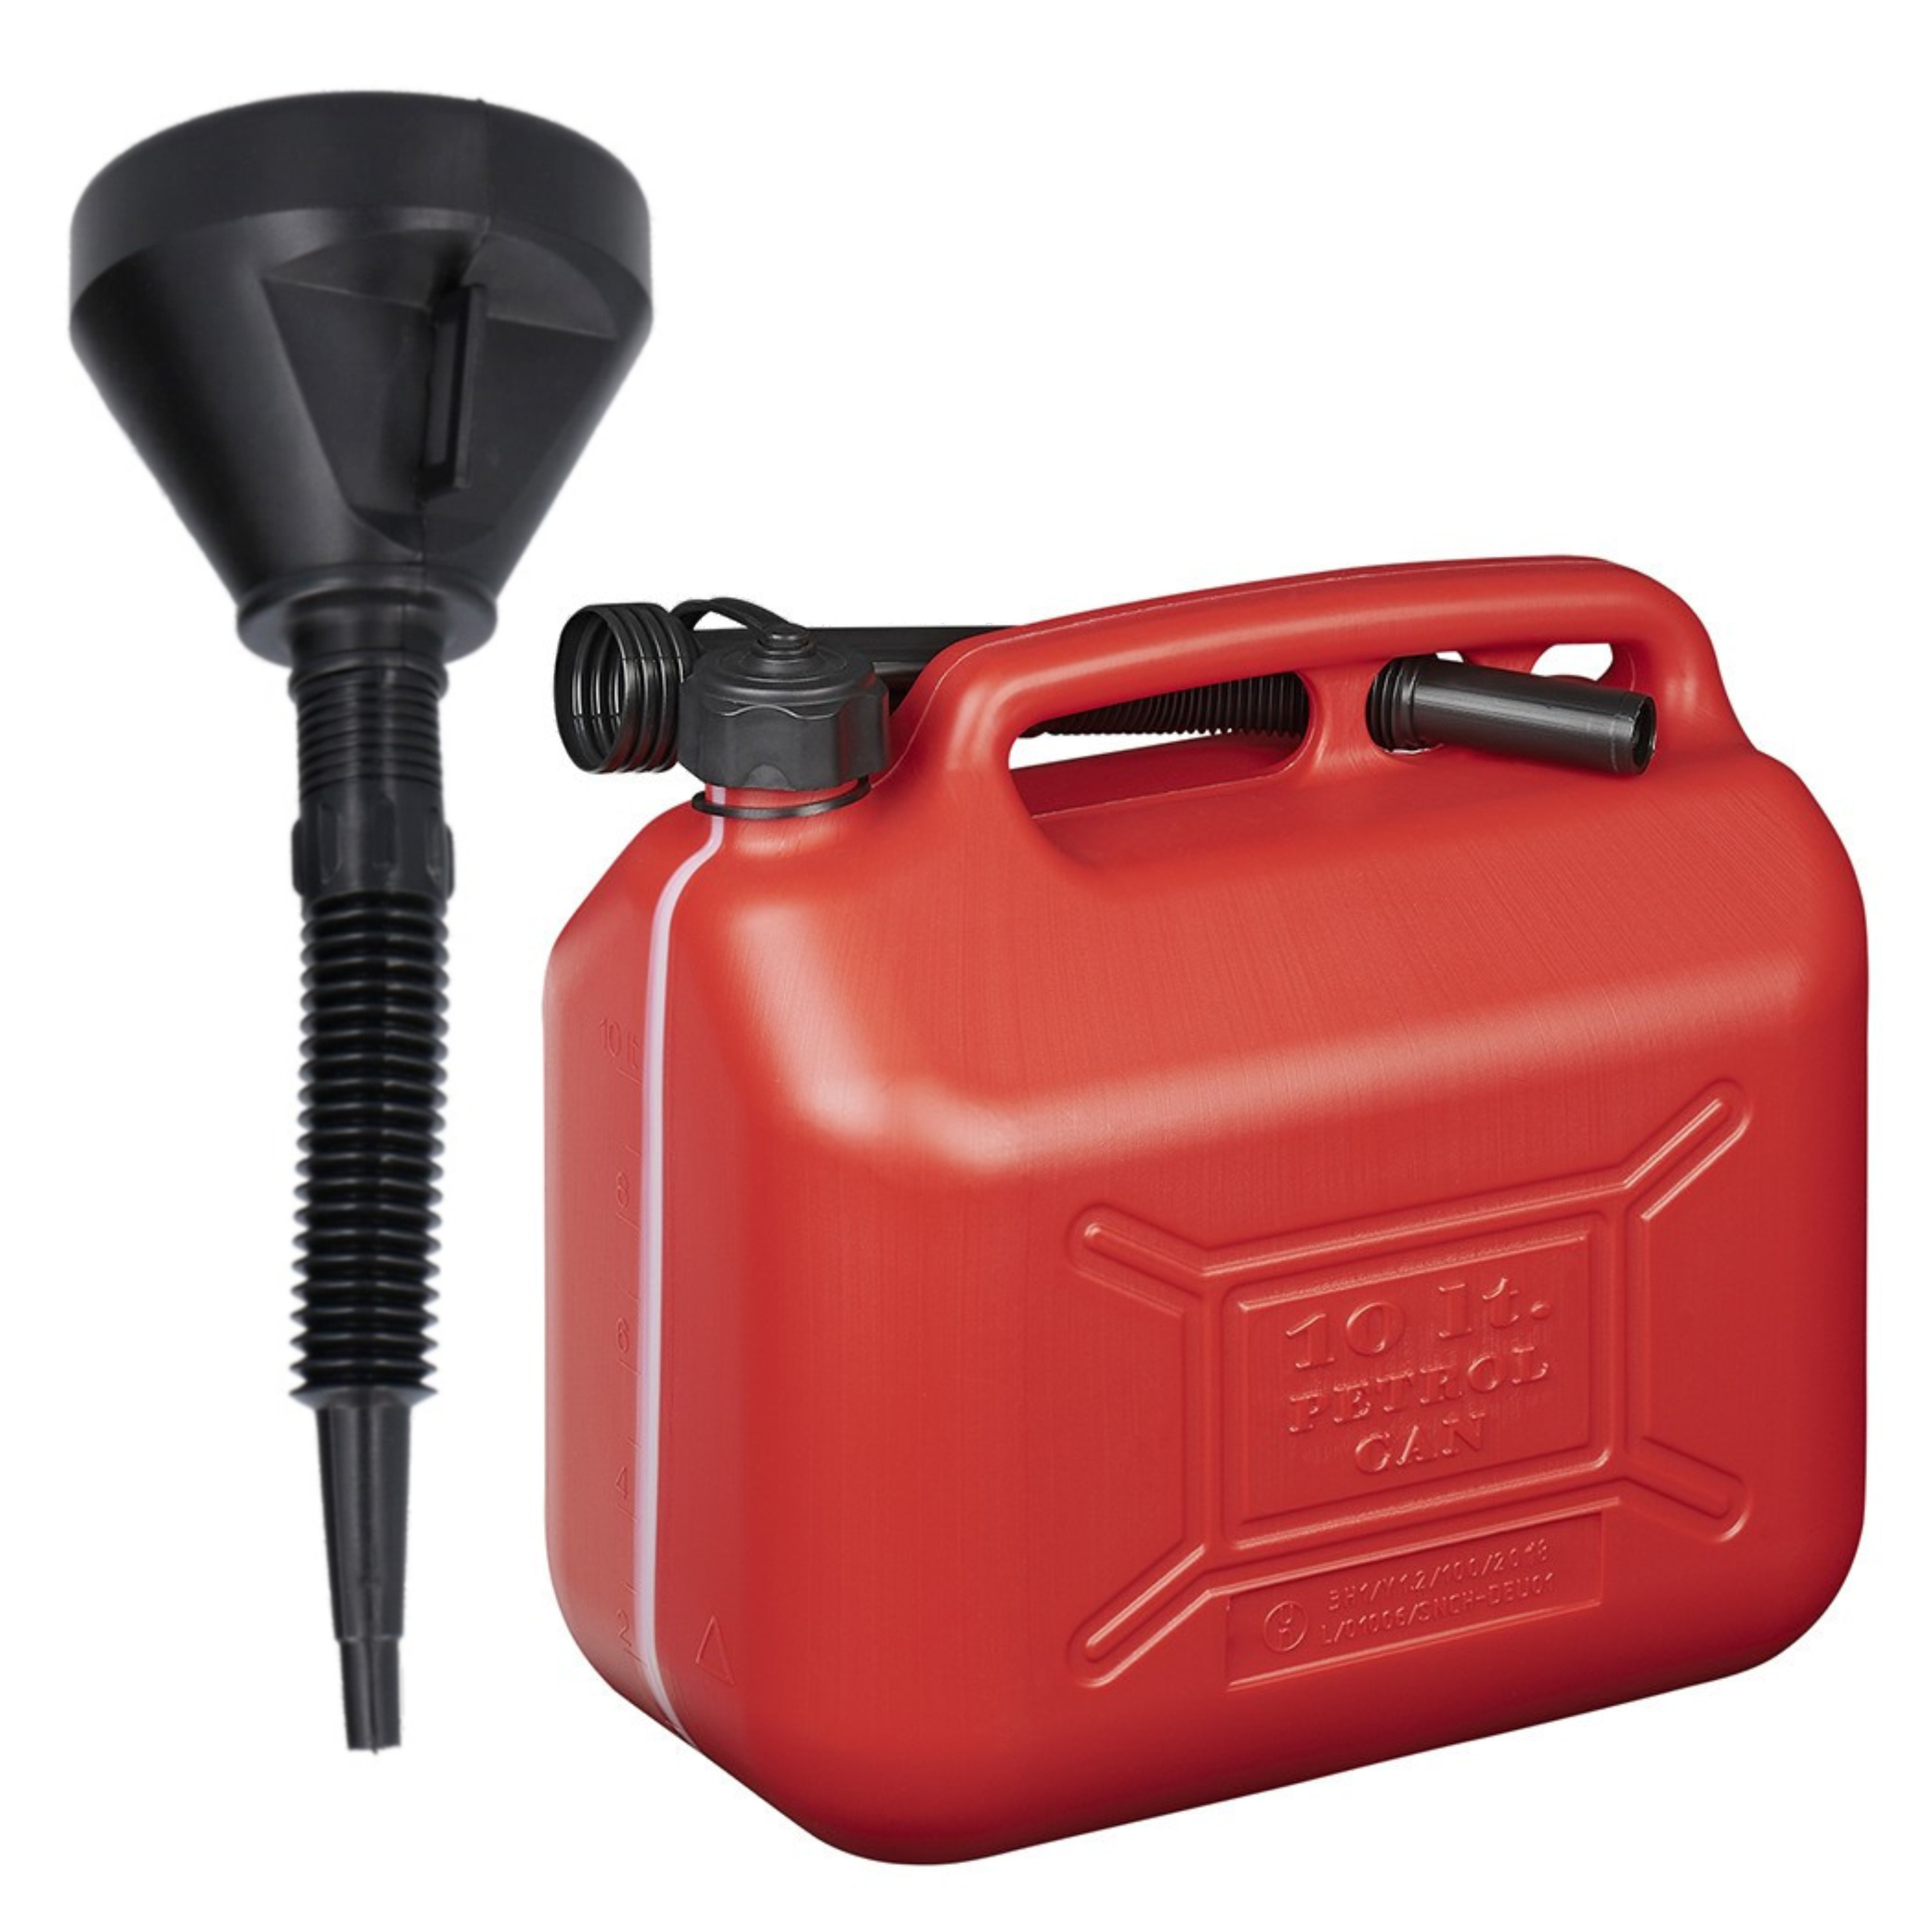 Jerrycan rood voor brandstof van 10 liter met een handige grote trechter